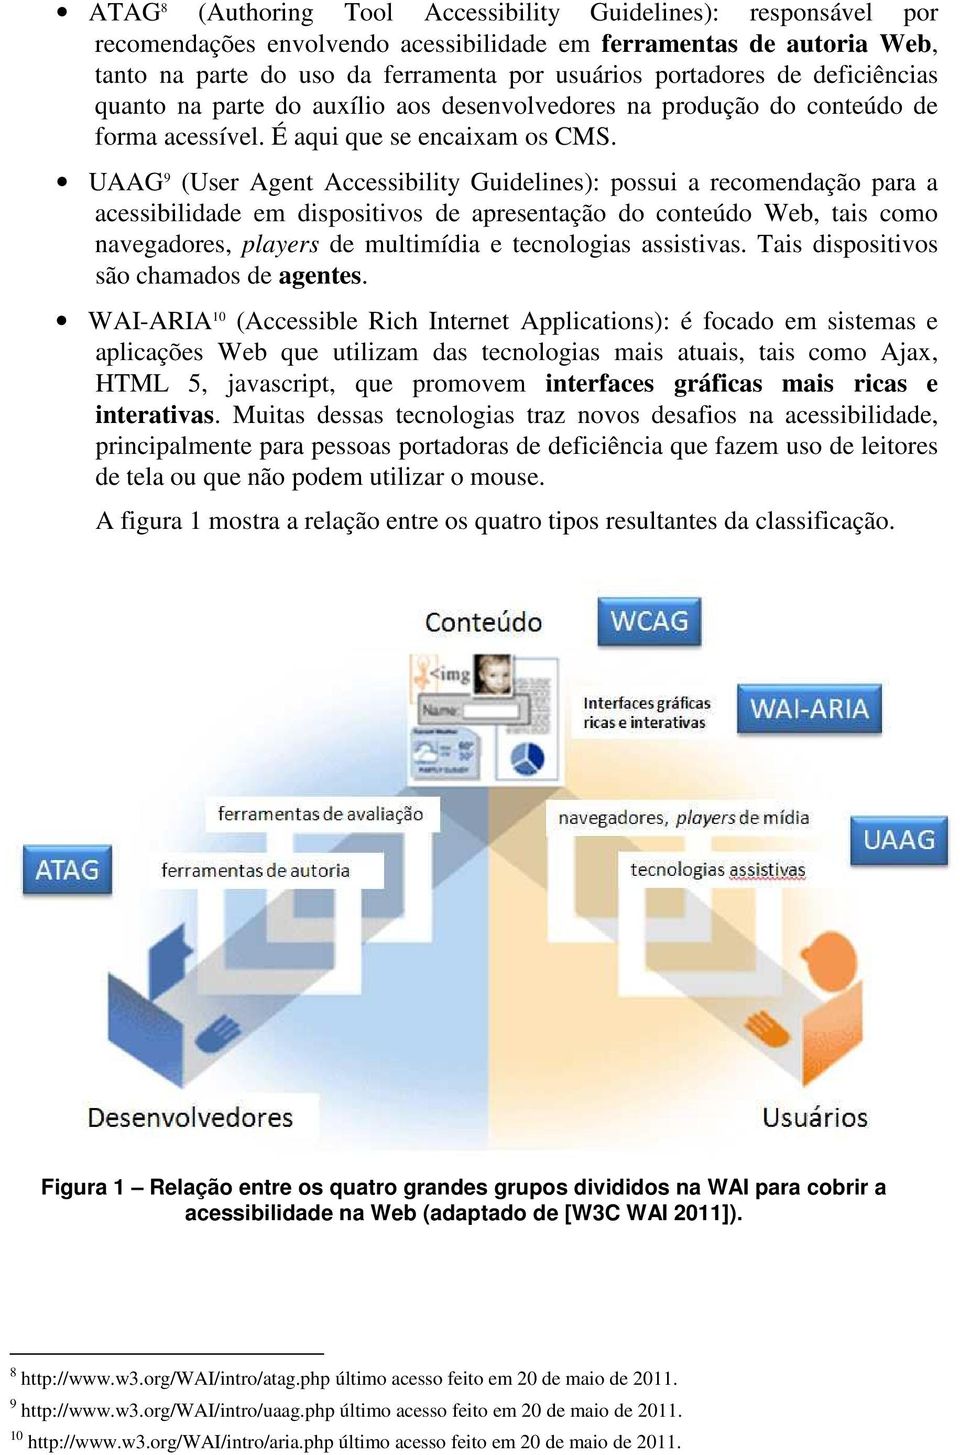 UAAG 9 (User Agent Accessibility Guidelines): possui a recomendação para a acessibilidade em dispositivos de apresentação do conteúdo Web, tais como navegadores, players de multimídia e tecnologias